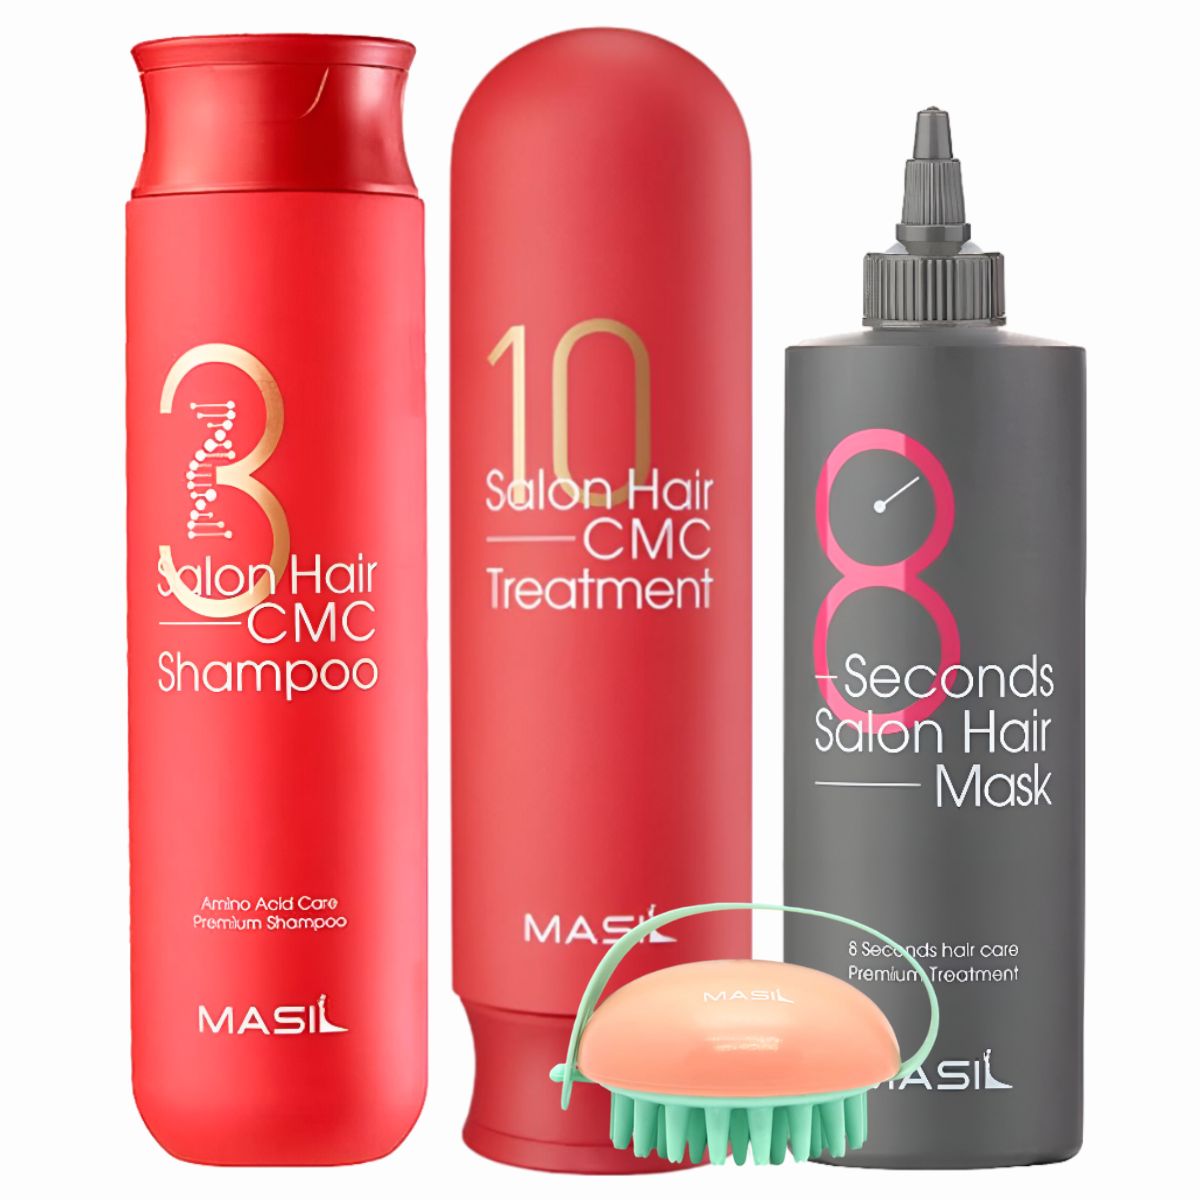 Набор для волос Masil 3 Salon Hair CMC Shampoo 300мл+Treatment 300мл+Hair Mask 200мл+Brush экспресс маска для увеличения объема волос 8 seconds liquid hair mask маска 200мл